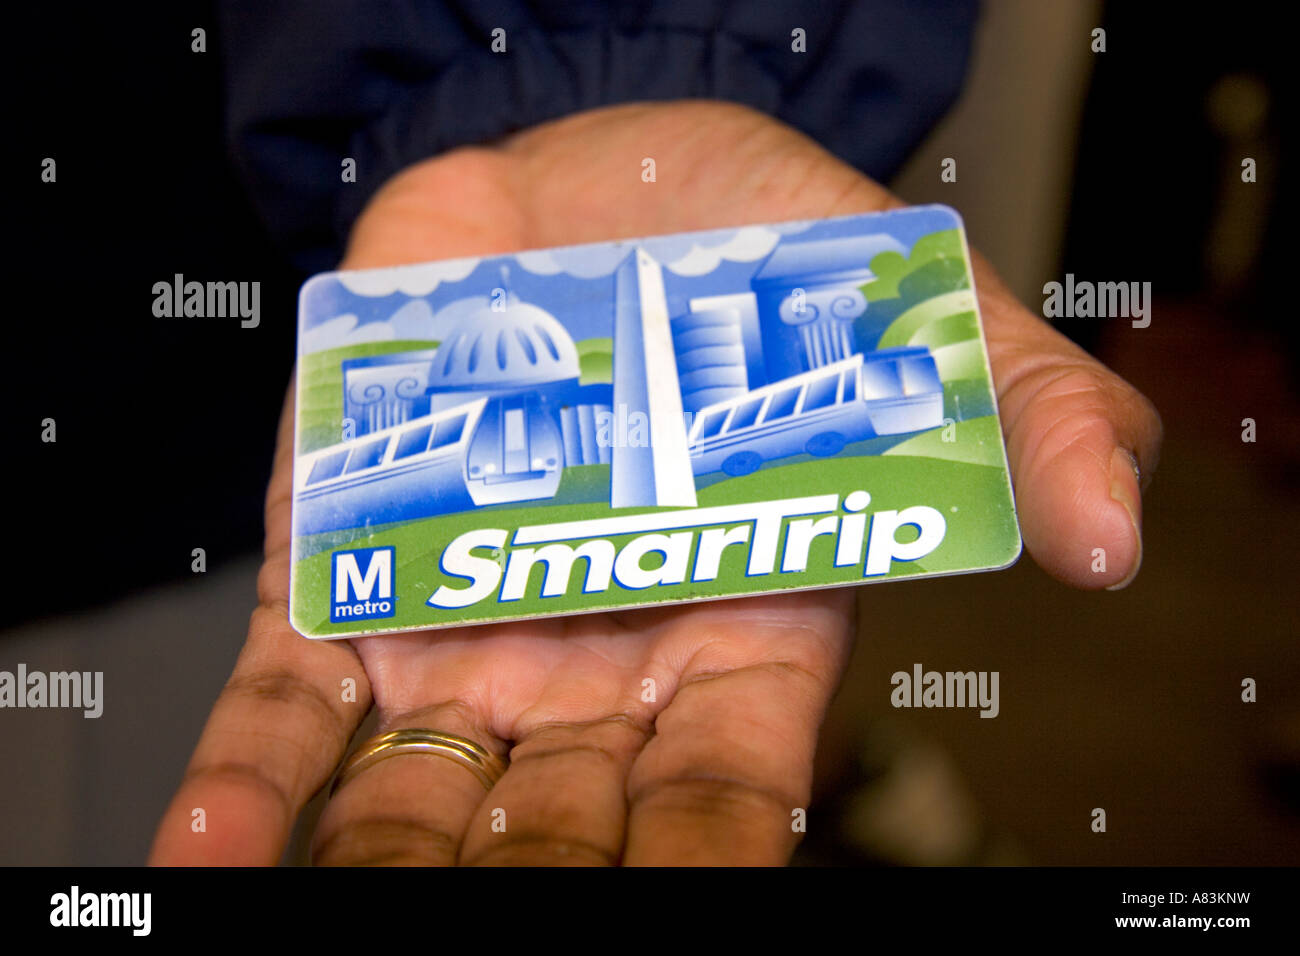 Carte de métro mensuel Smartrip pour le système Metrorail à Washington D C Banque D'Images